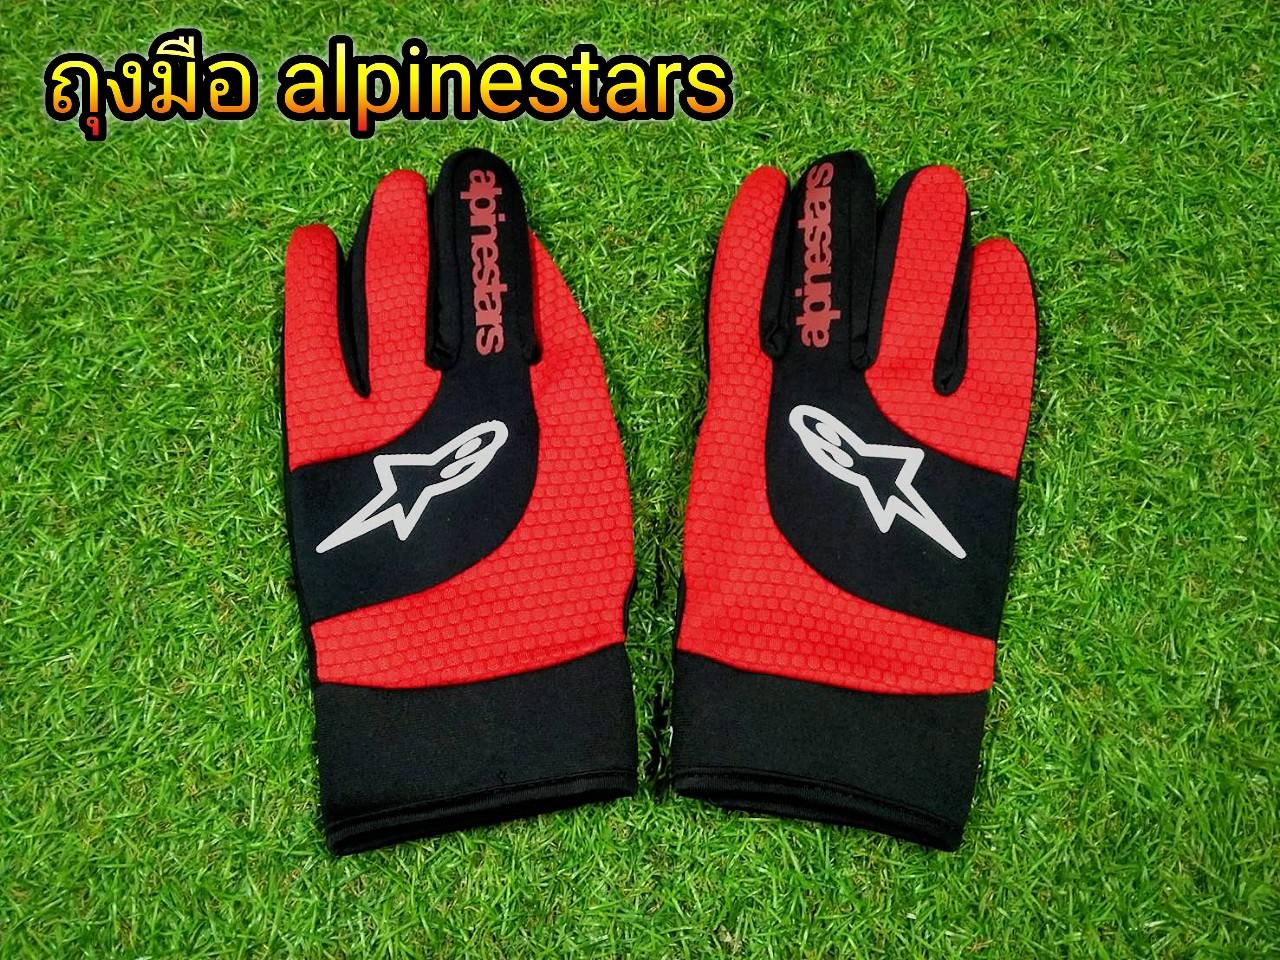 ขับมอไซต์โดยเฉพาะ! ืถุงมือไซต์ใหญ่ XL แดง ถุงมือขับมอเตอไซต์ alpinestars  ใยผ้าคุณภาพ ระบายอากาศได้ดี